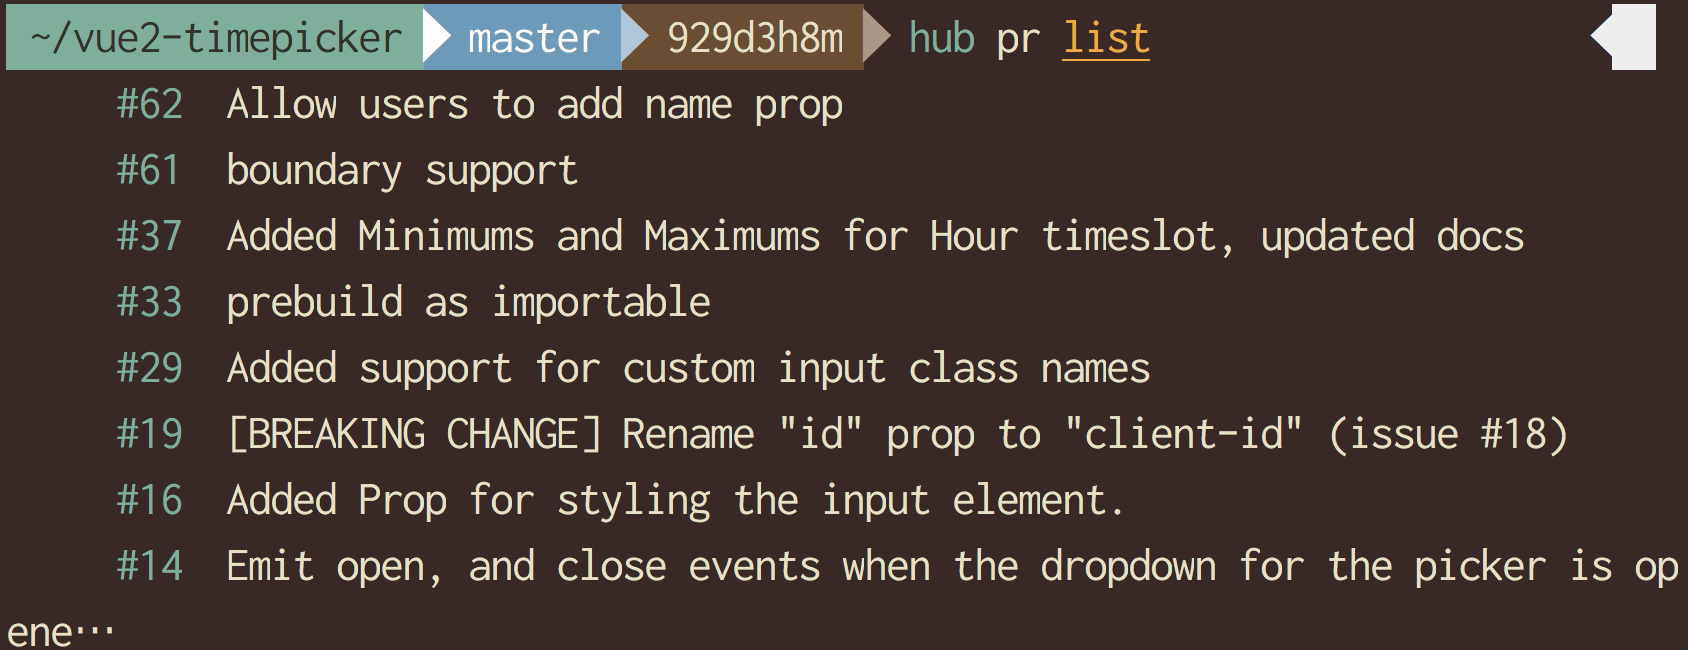 hub pr list を実行したときの表示例